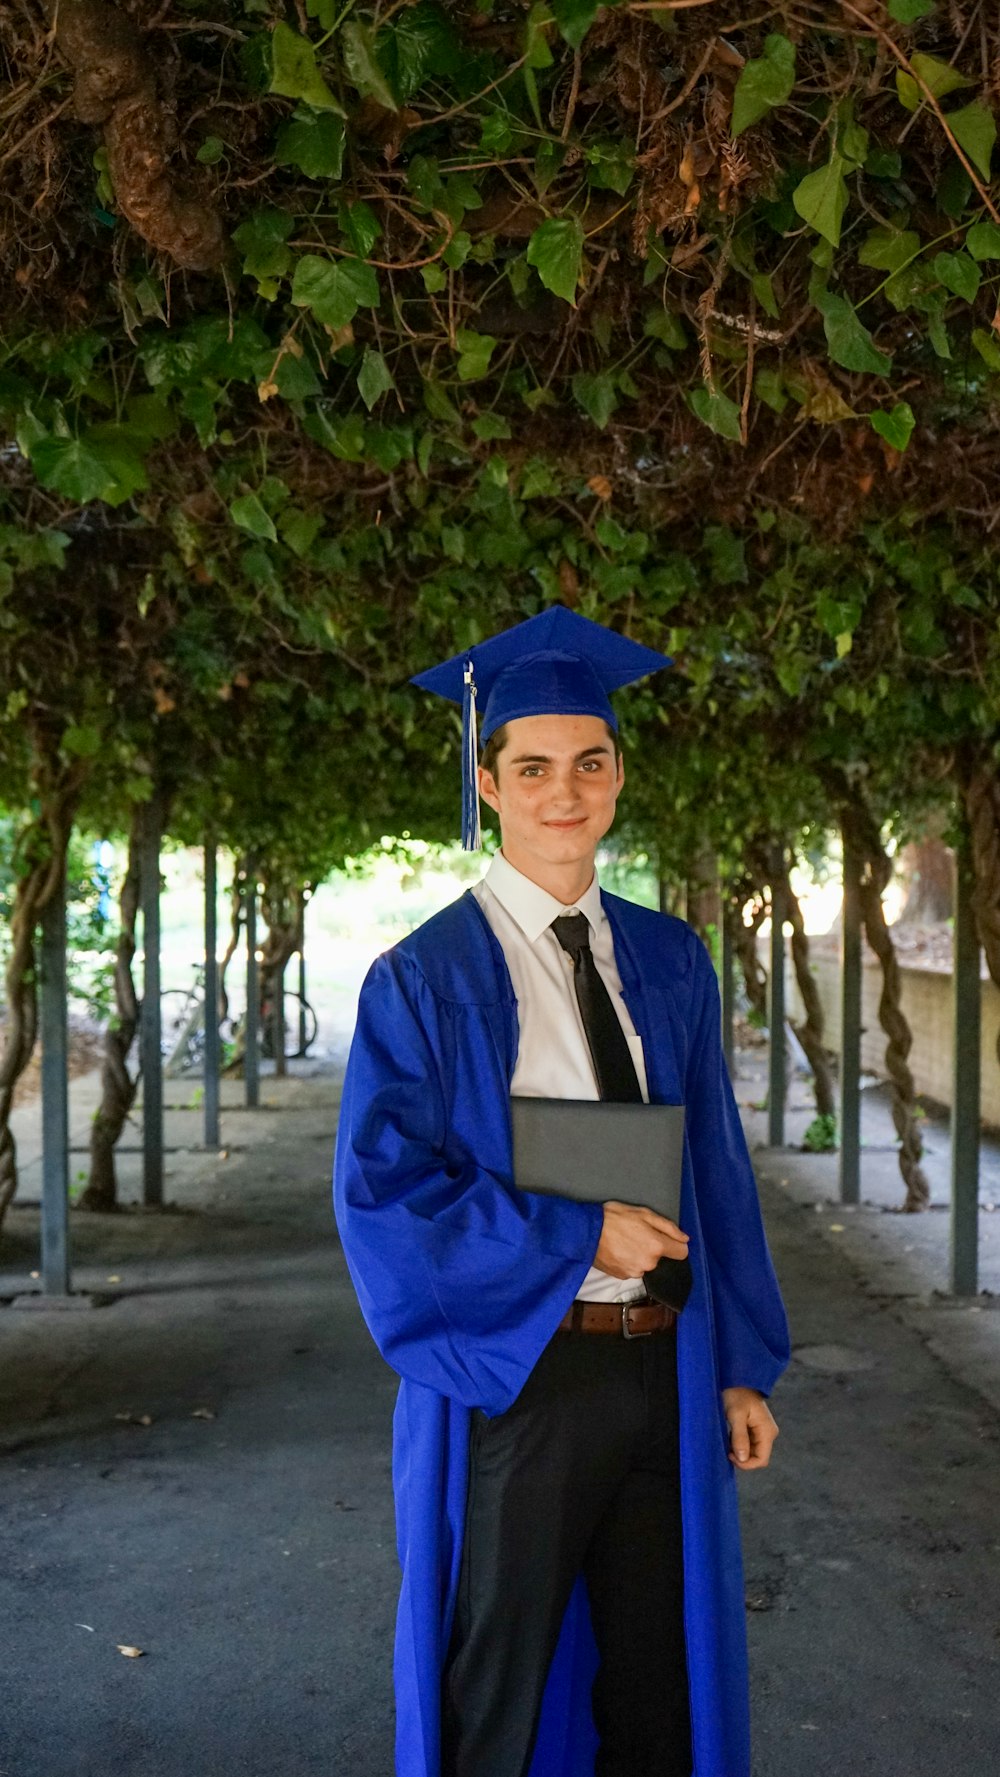 Homme en robe académique bleue et chapeau académique debout près de l’arbre vert pendant la journée